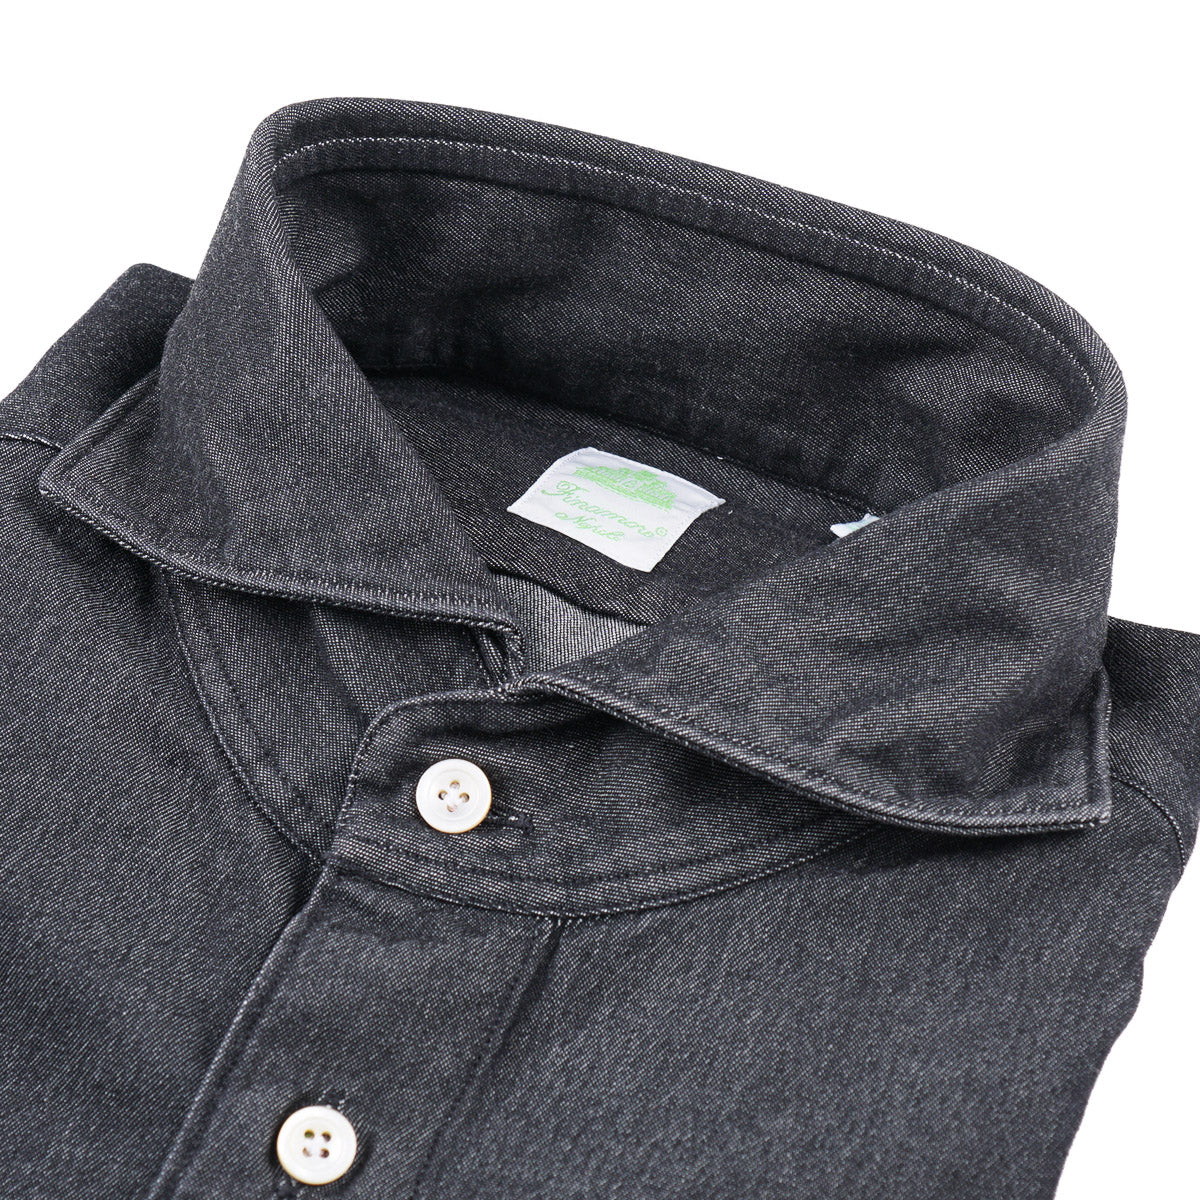 Finamore Rinsed Black Denim Shirt - Top Shelf Apparel